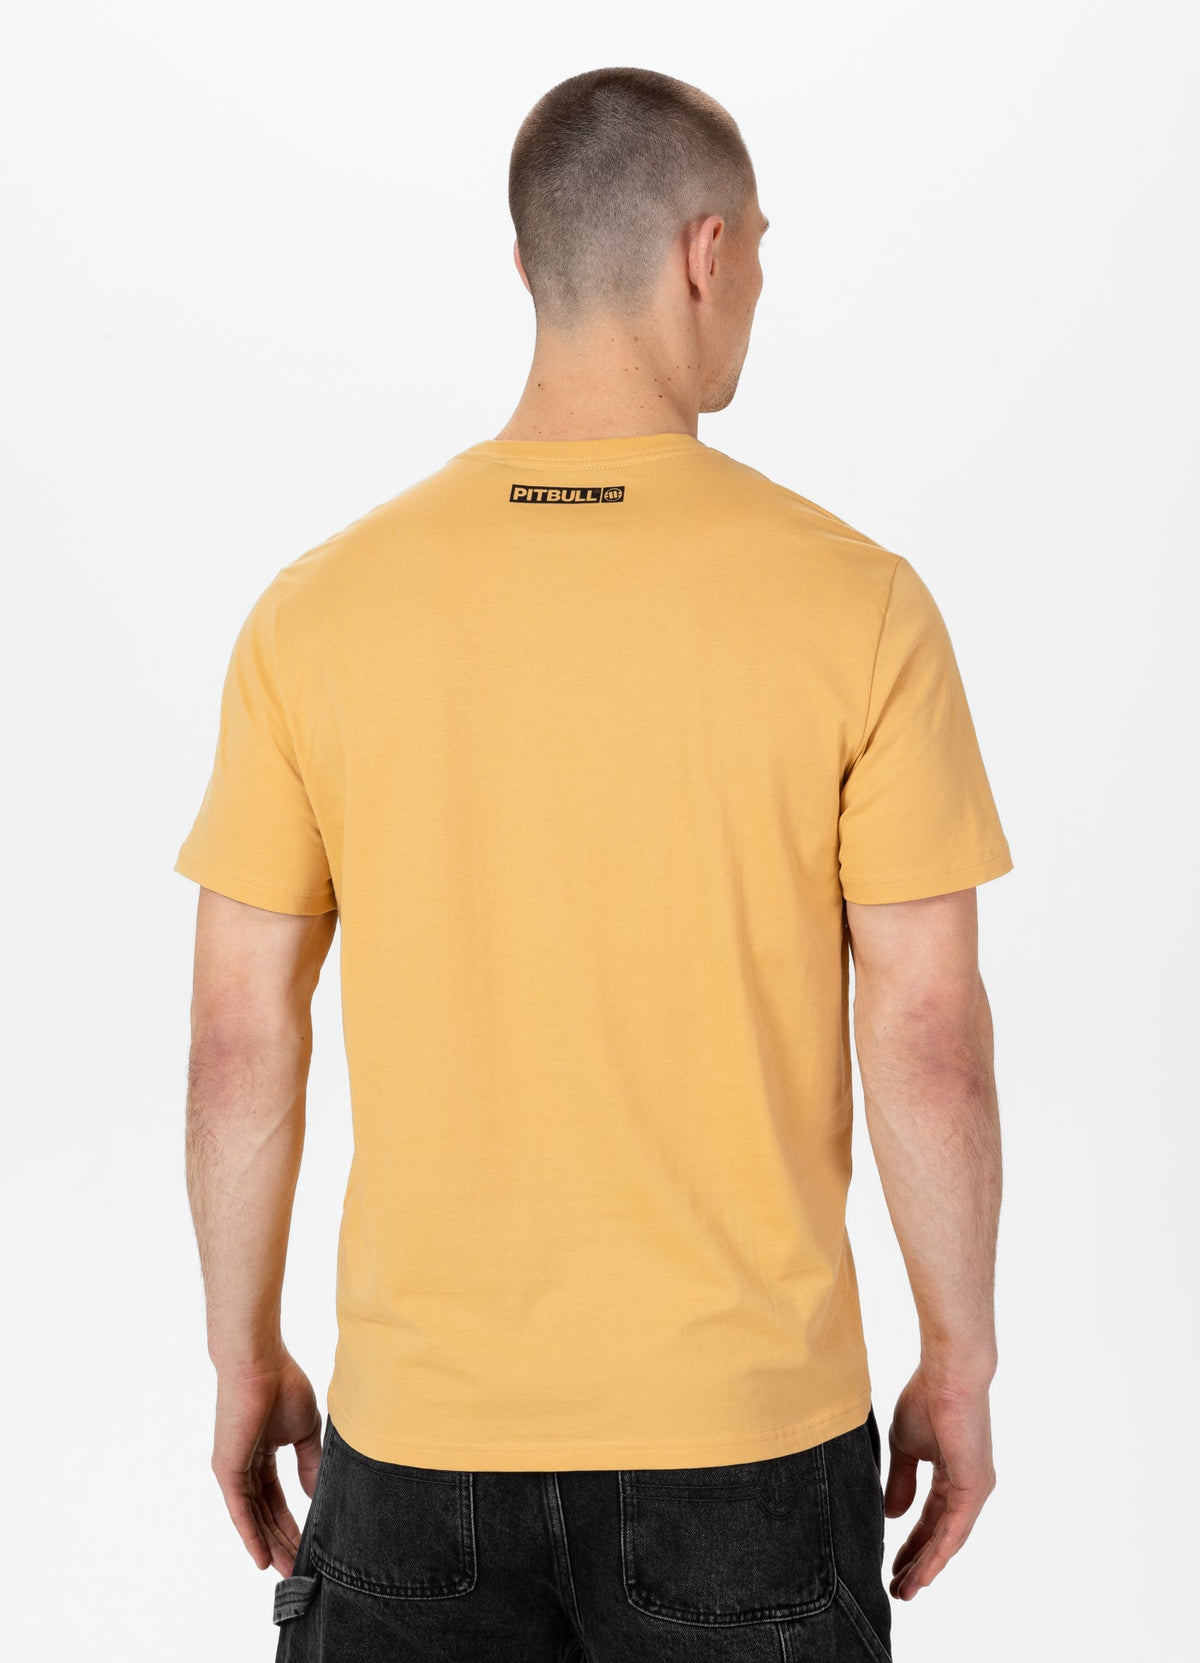 HILLTOP Lightweight Pale Yellow T-shirt